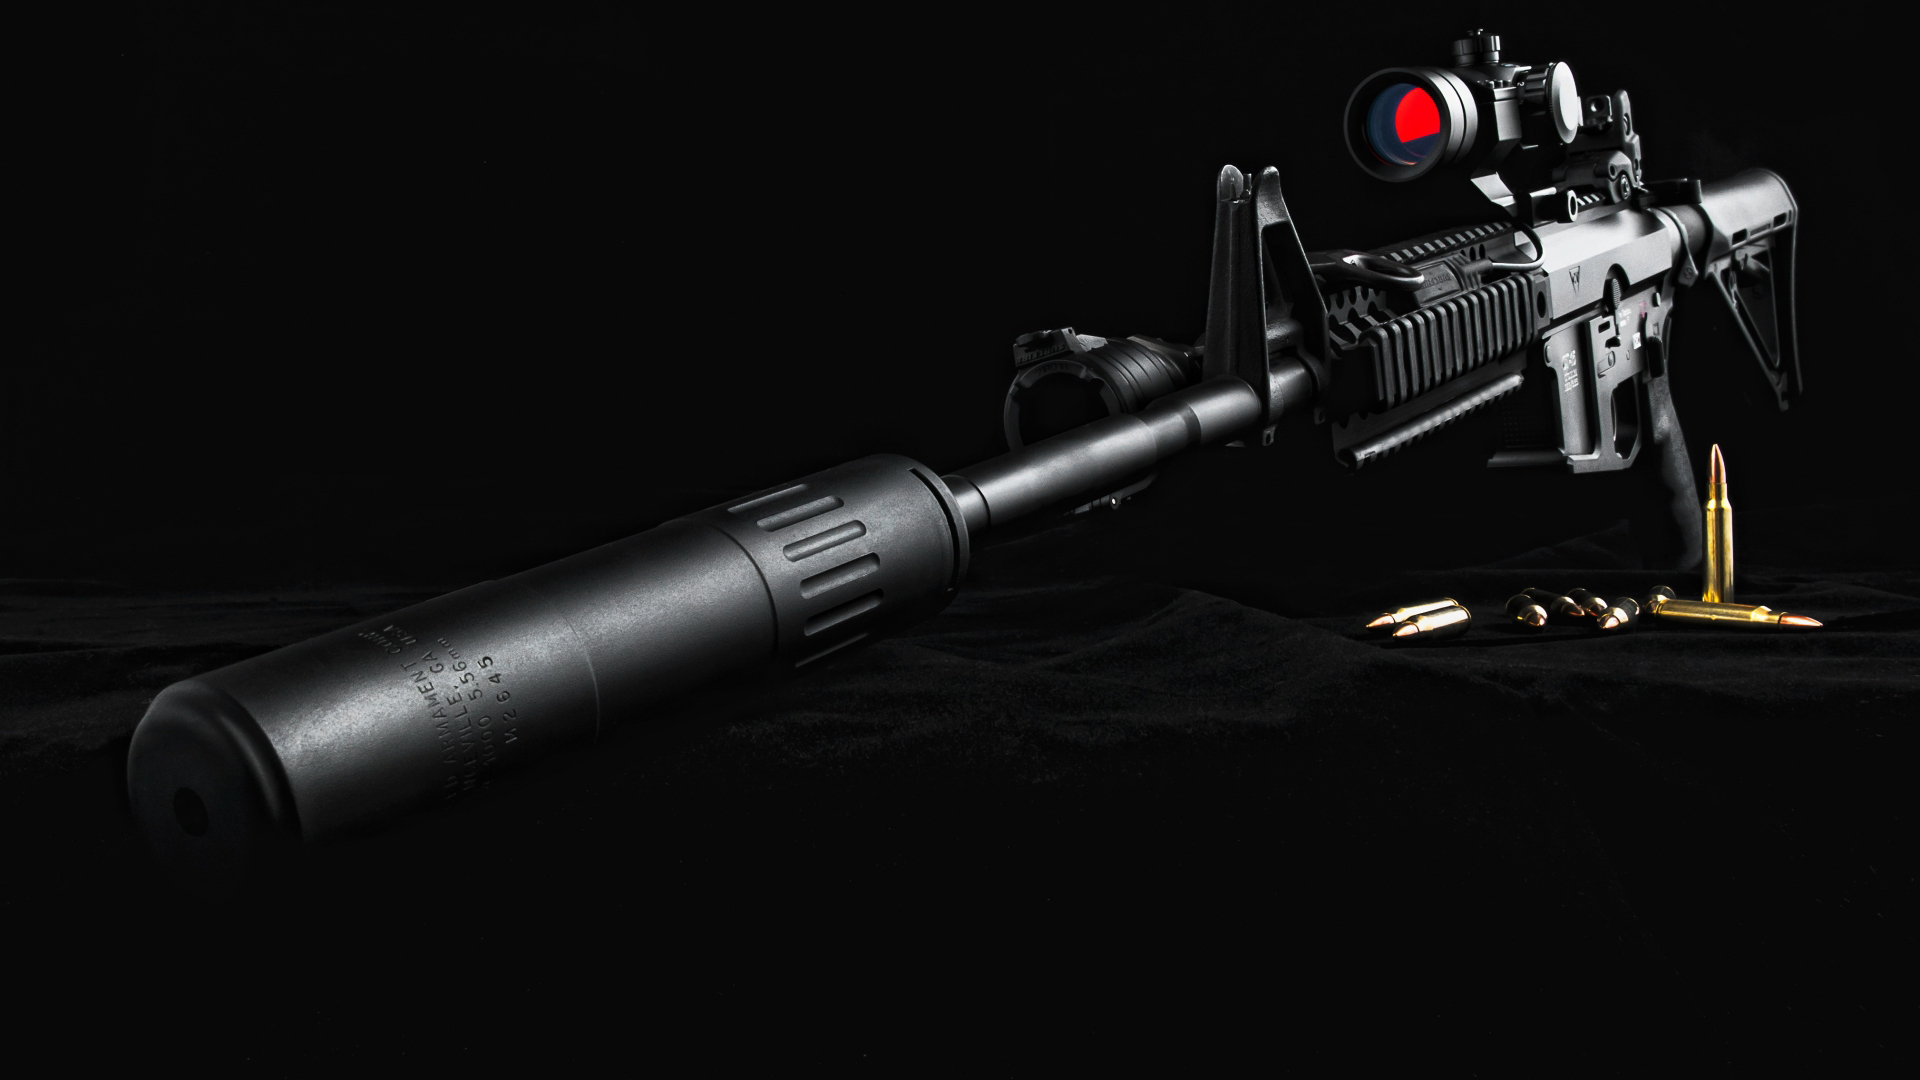 waffentapete hd 1080p,gewehr,luftgewehr,gewehrlauf,airsoft pistole,optisches gerät